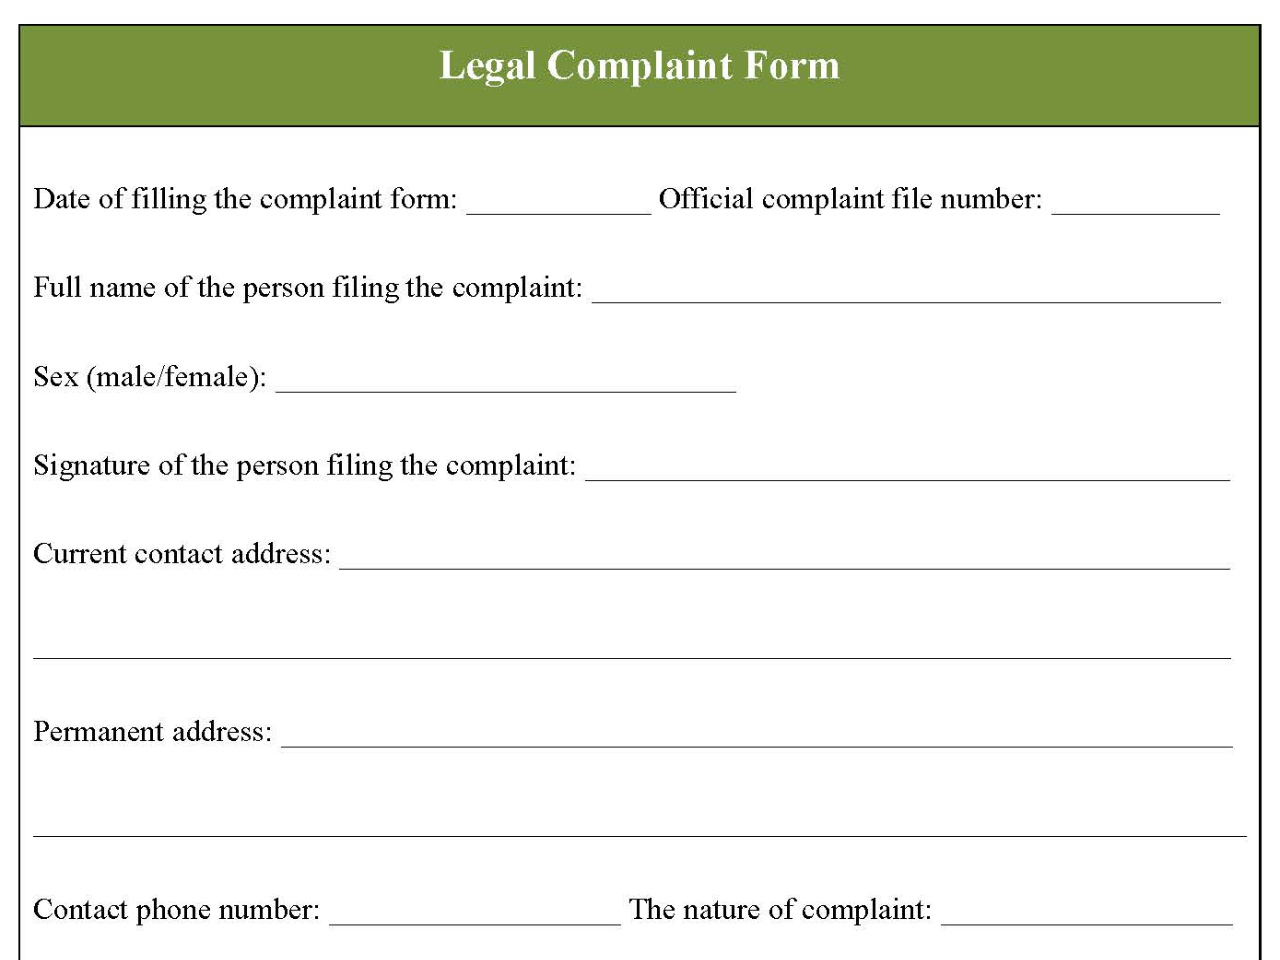 Legal Complaint Form